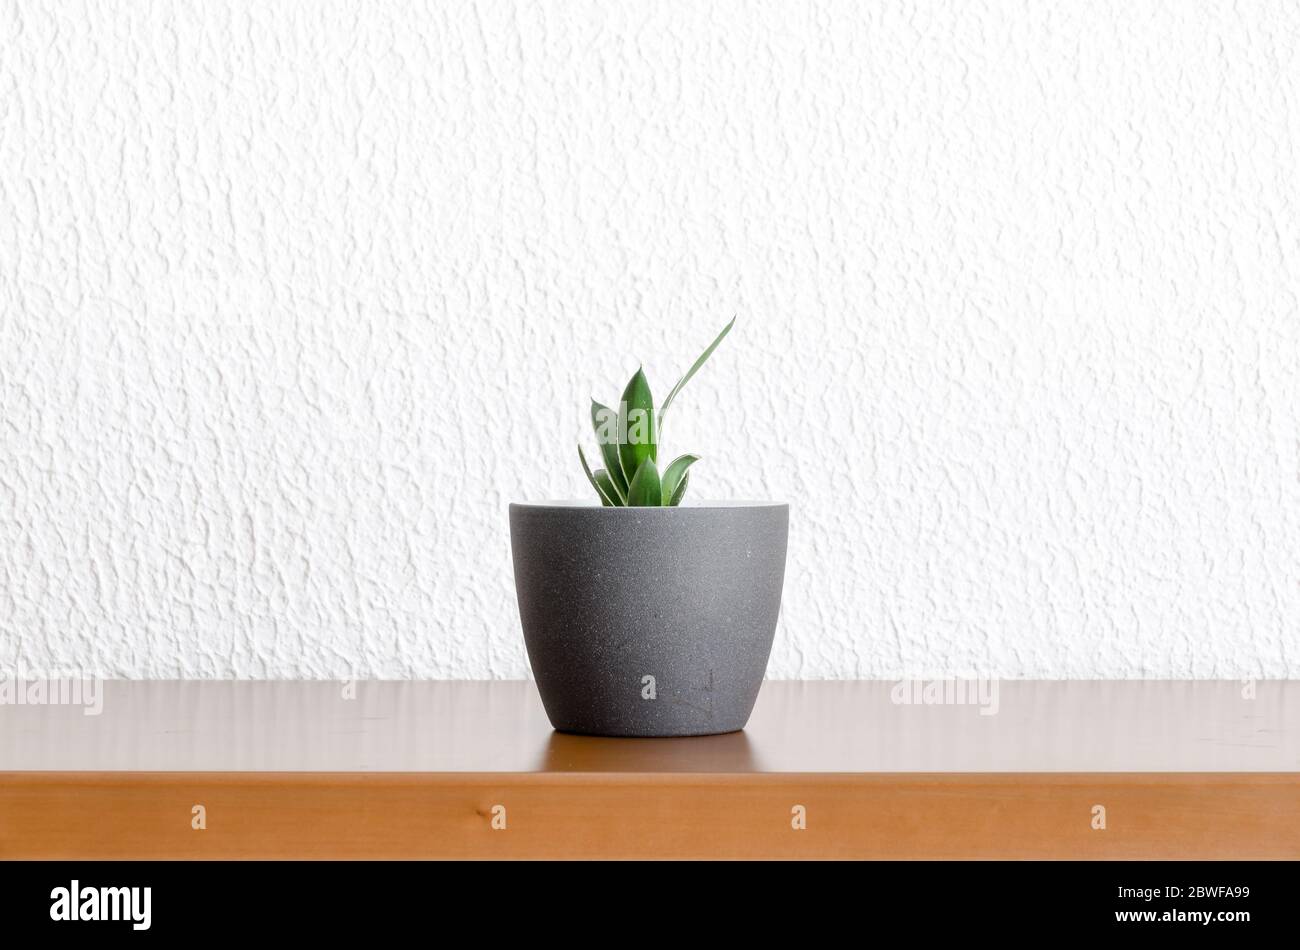 Semplice e minimalista, con piante verdi in pentola o vaso su scrivania o tavolo in legno, decorazioni interne, interni, vista frontale Foto Stock